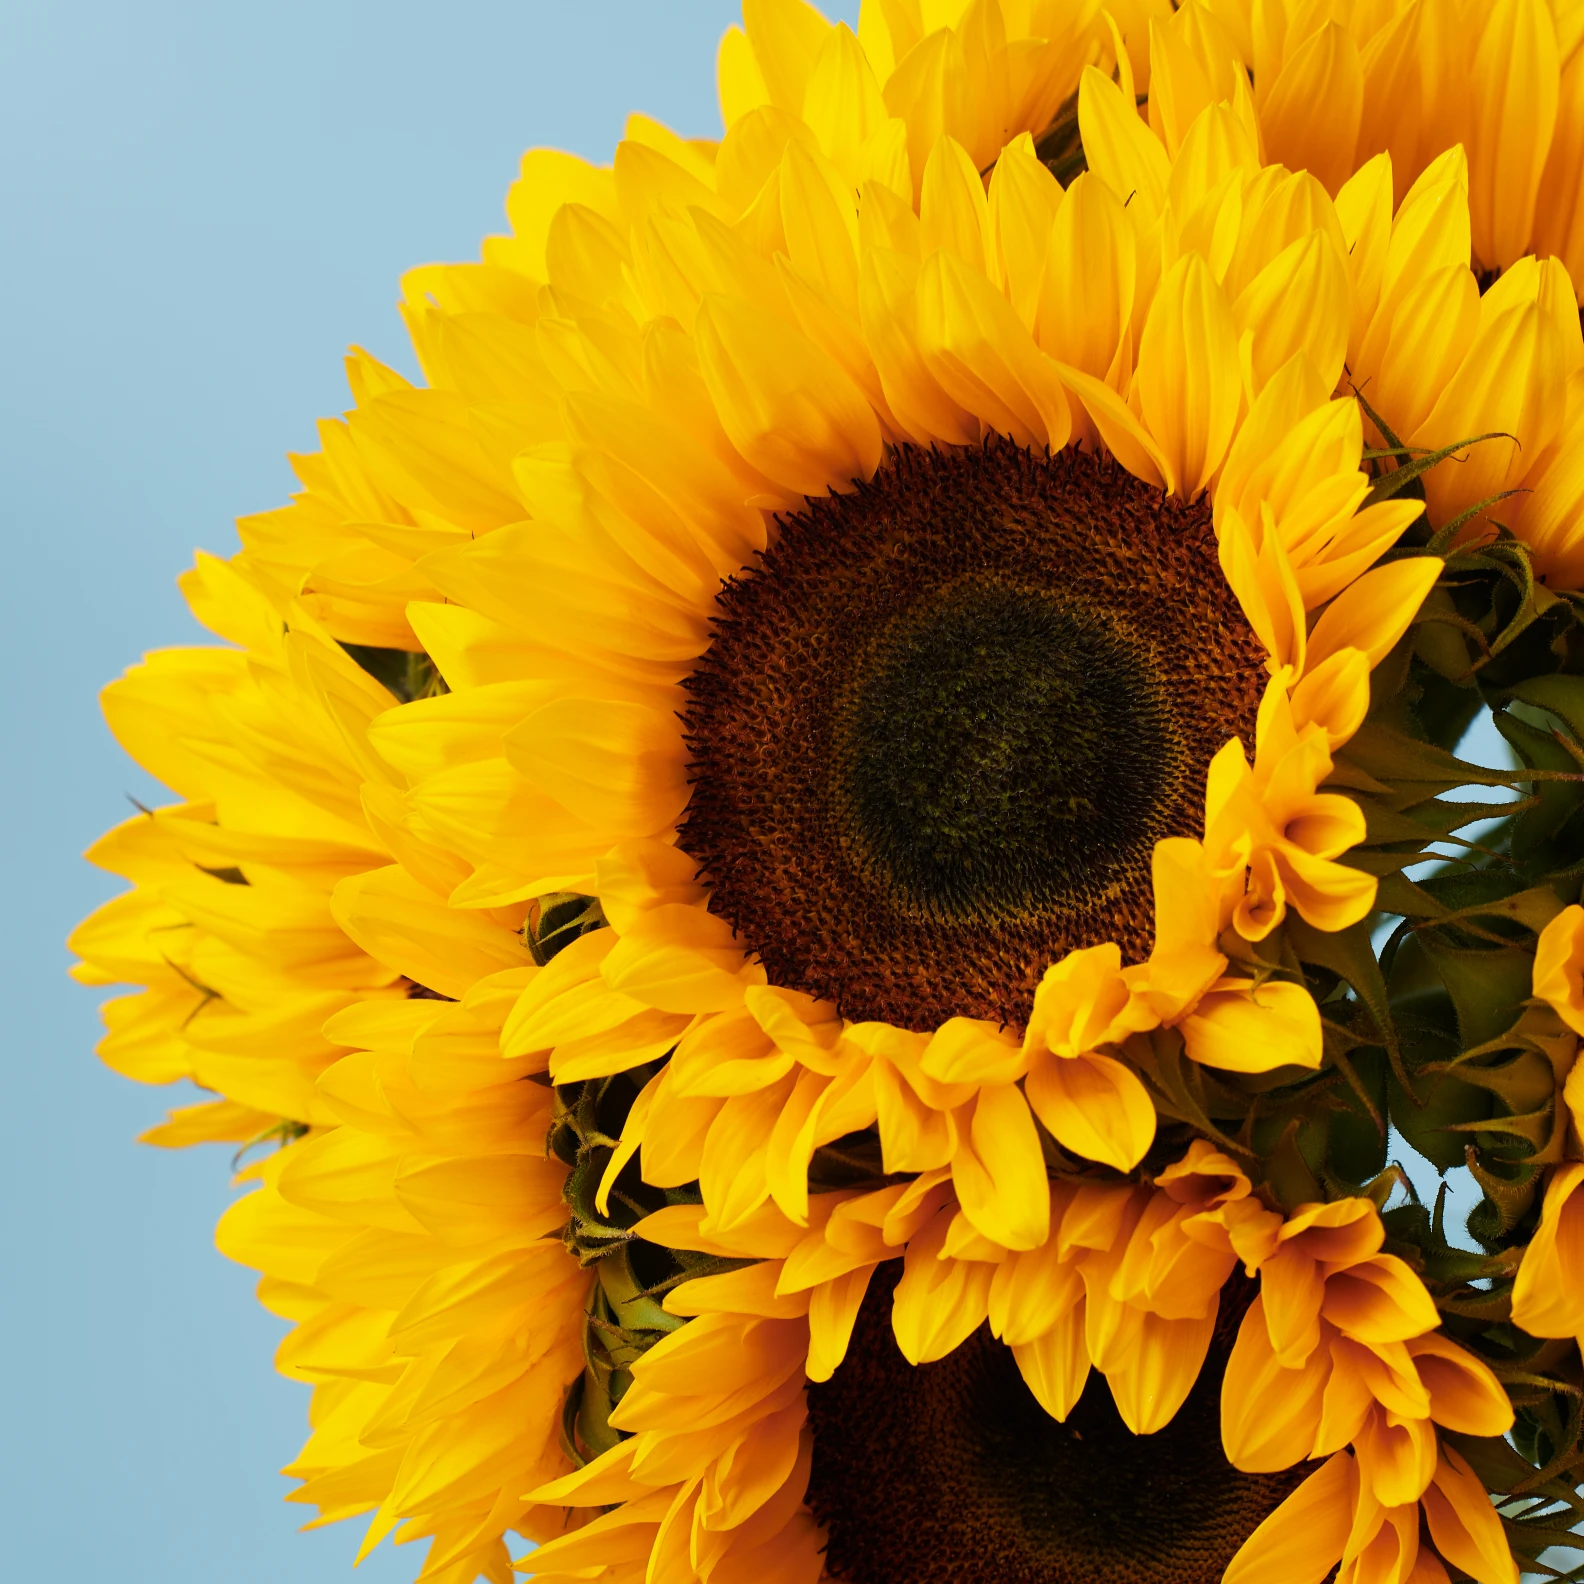 10 Sunflowers - image №3